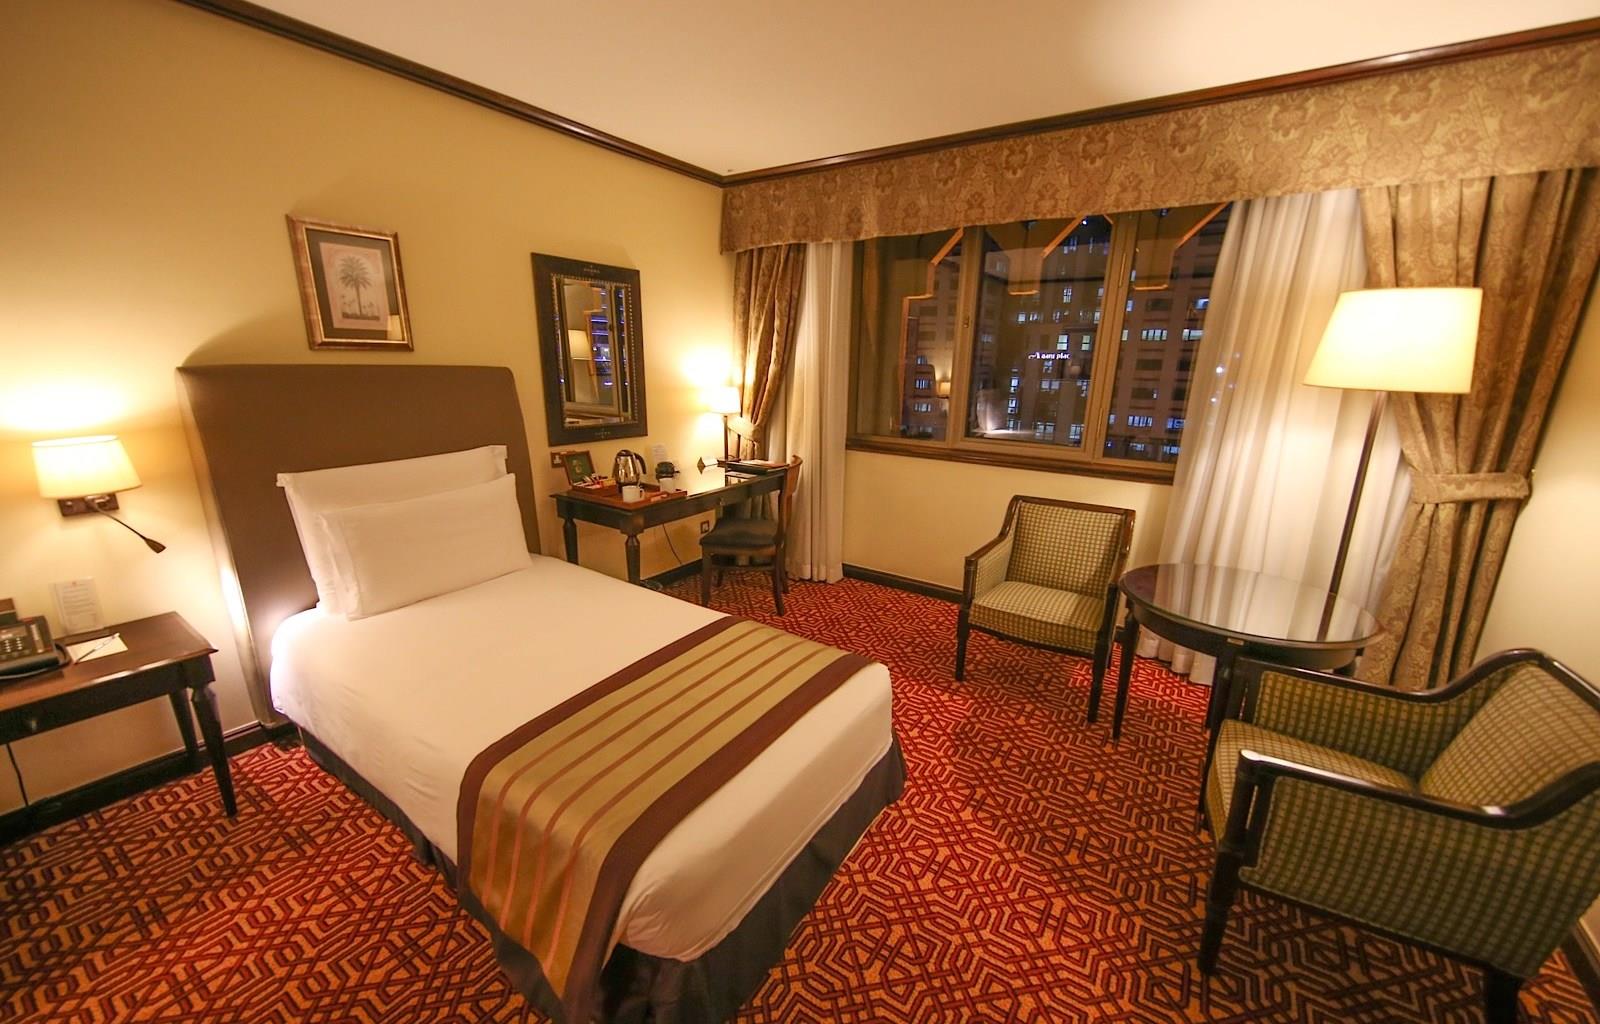 Dar es Salaam Serena Hotel 5*